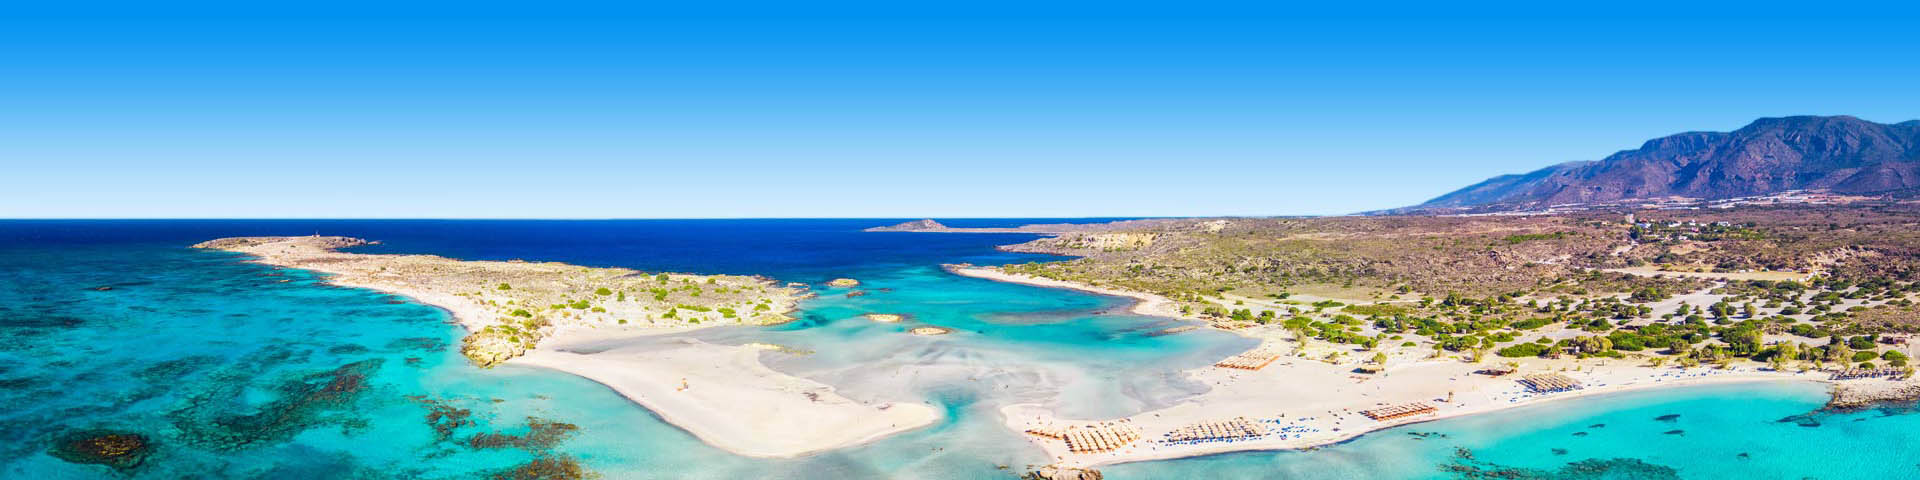 Uitzicht over helderblauwe baaitjes eindigend in de zee bij Kreta